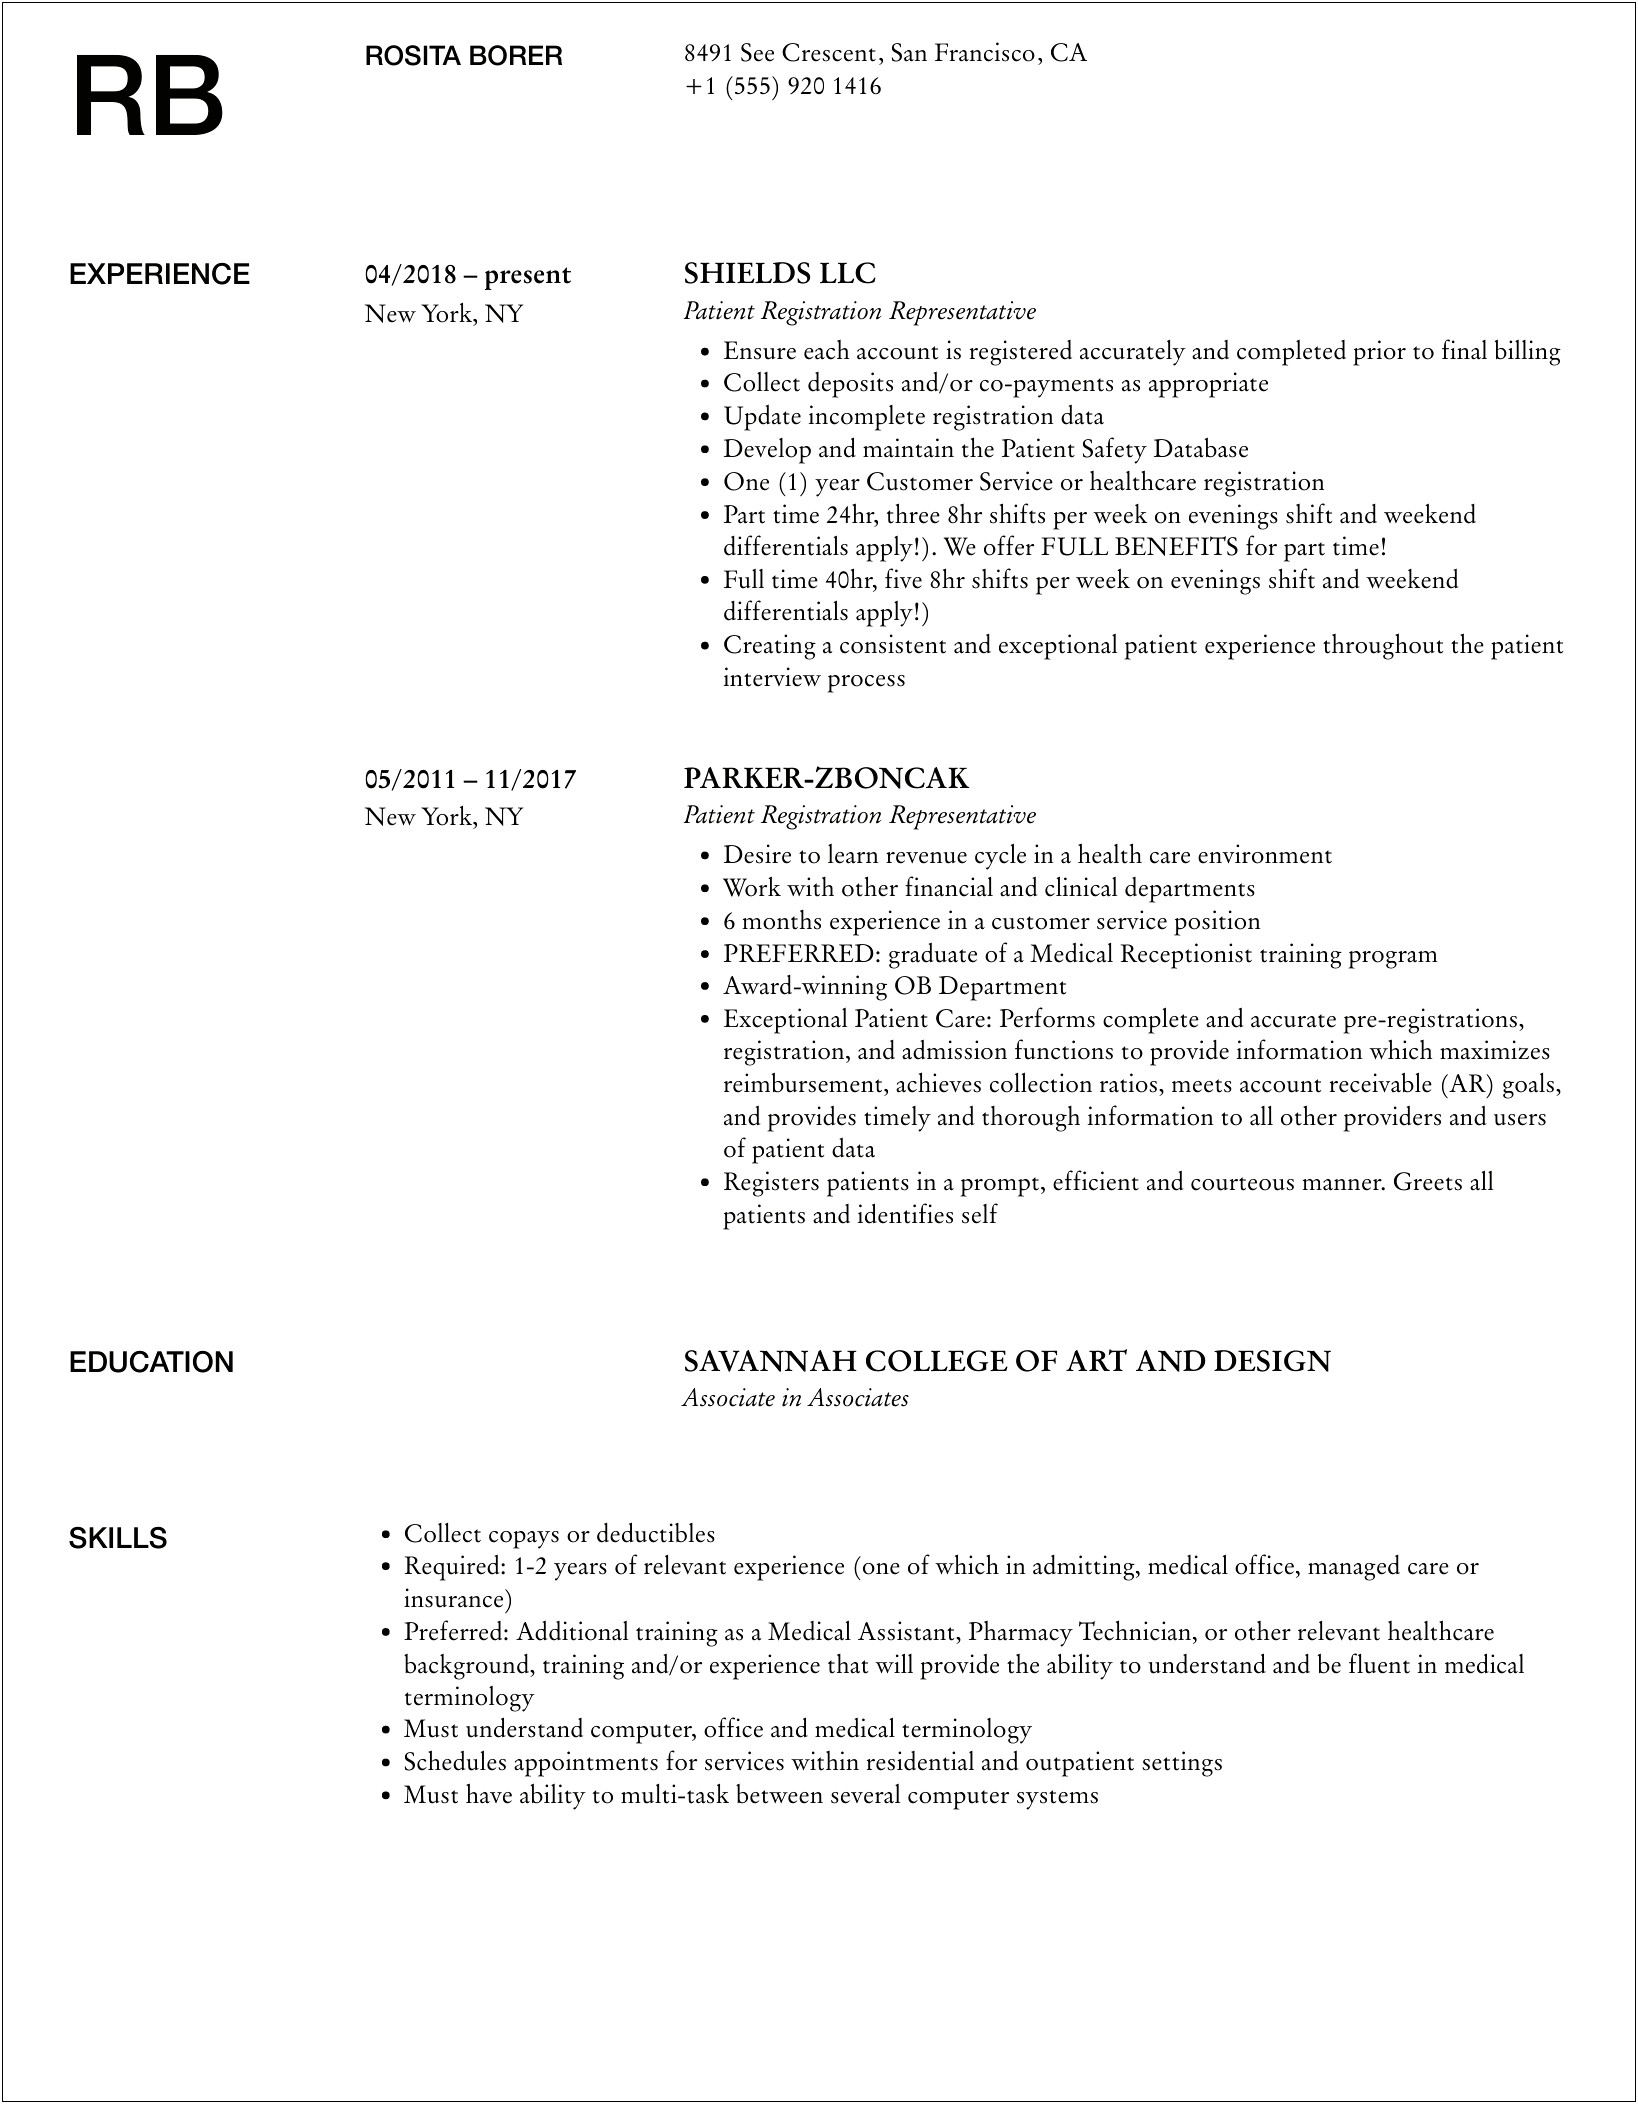 Patient Registration Job Description For Resume